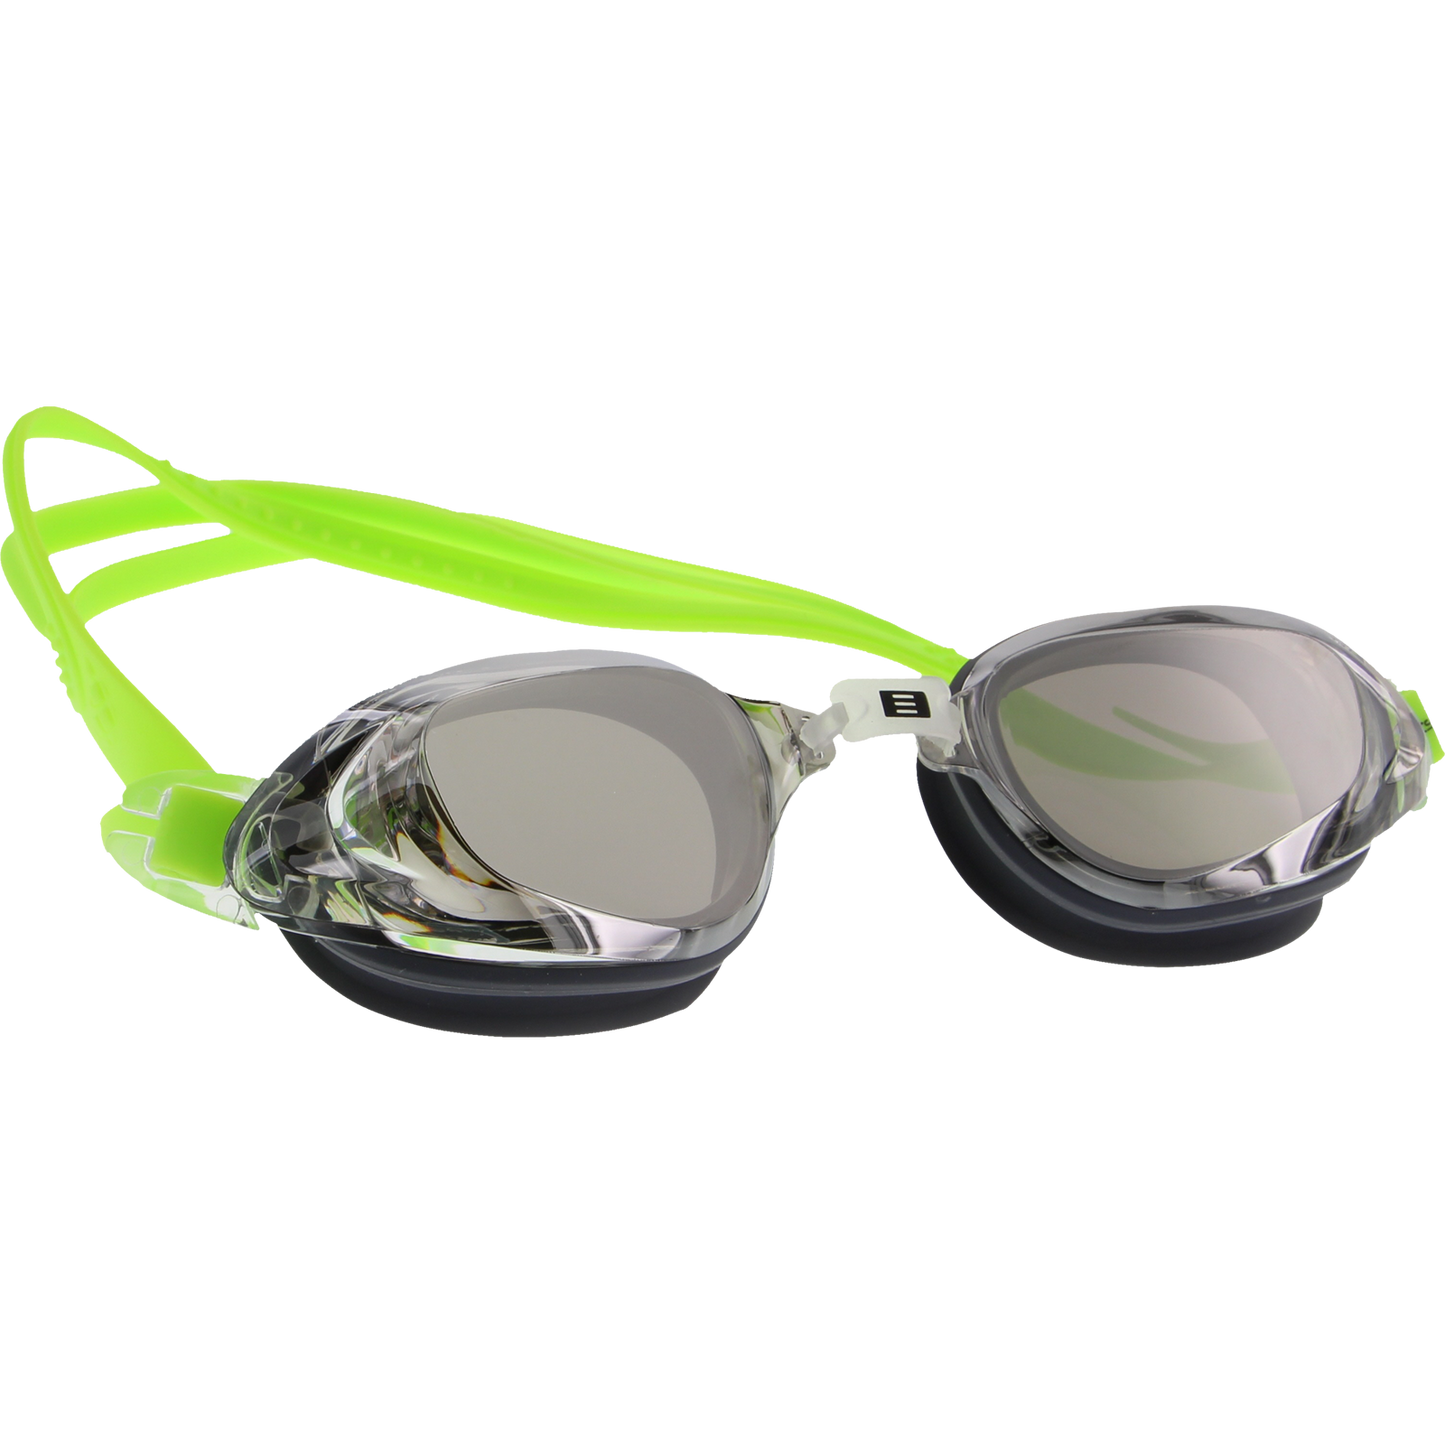 DMC Pro Swim Goggles - Neon Green/Charcoal